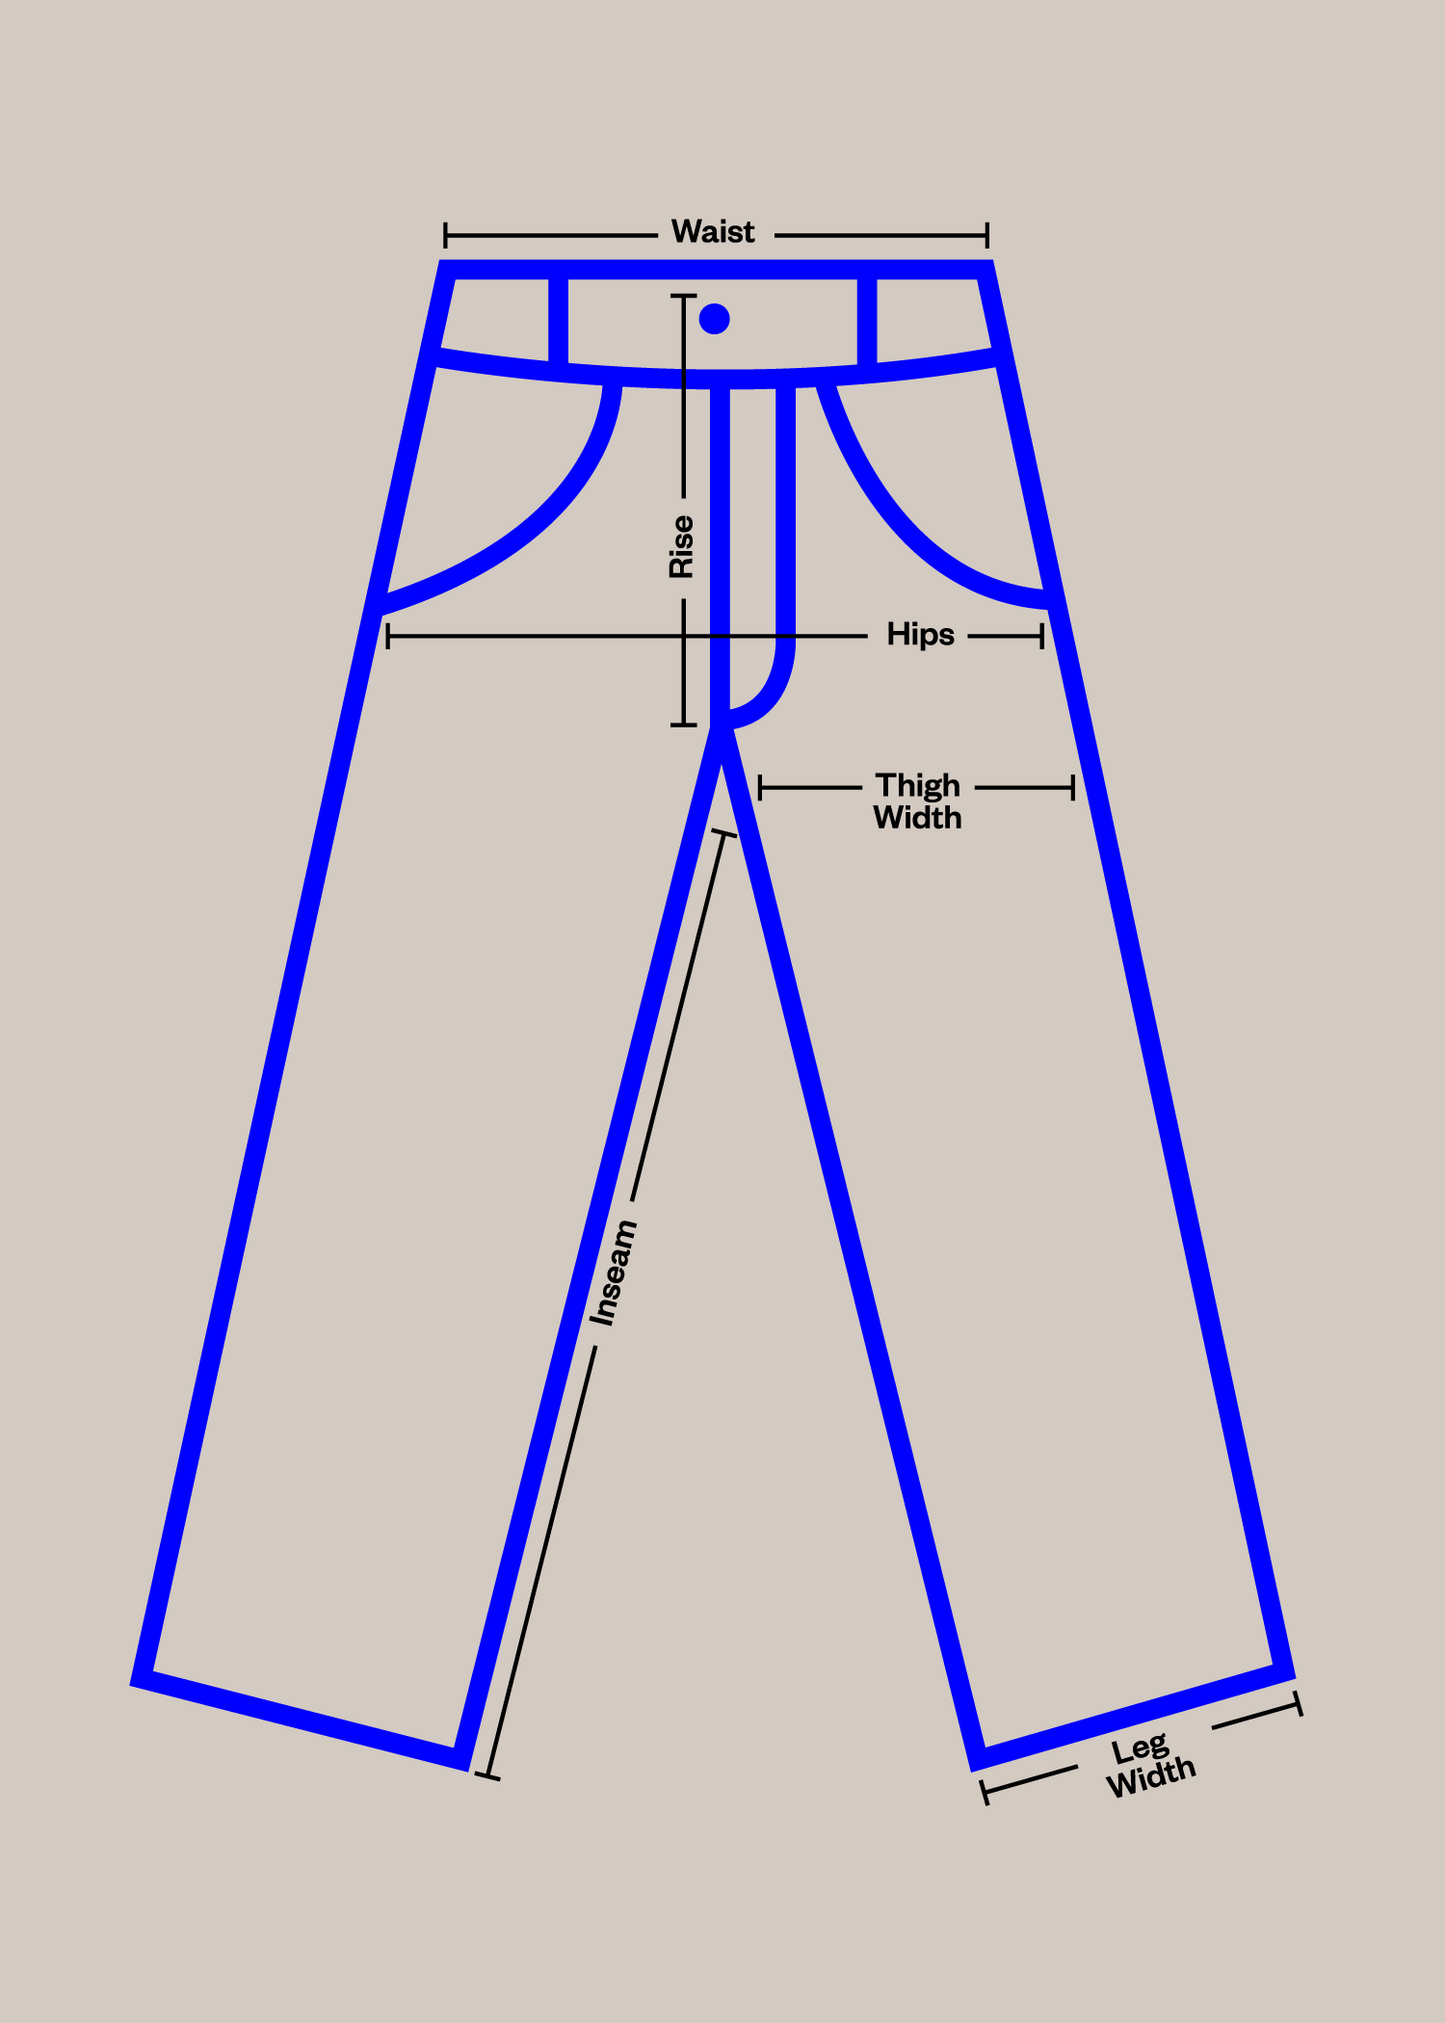 1980s Geometric Pattern Pajama Pants Size XS/S